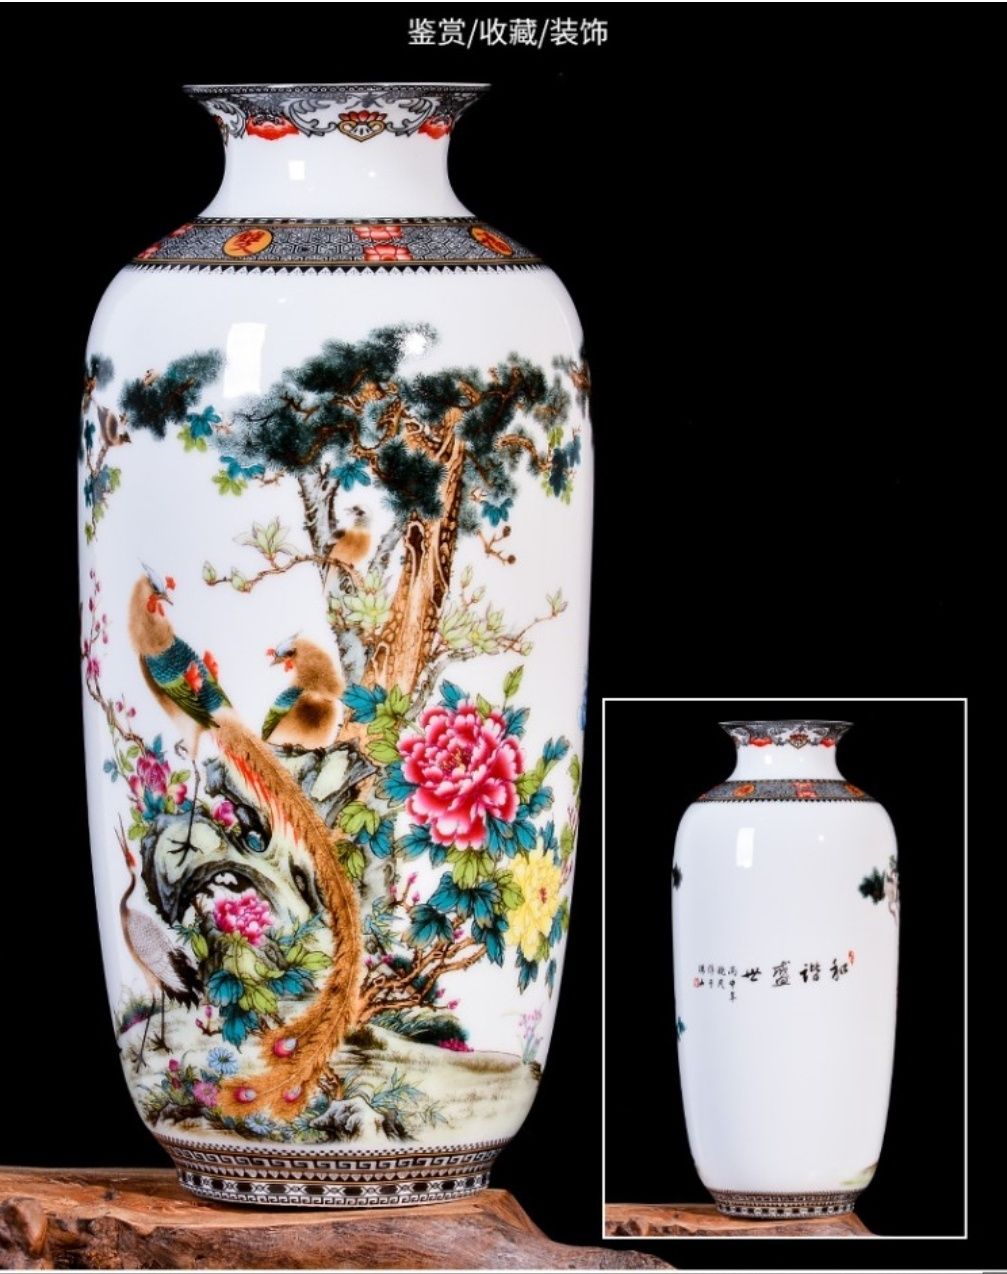 ваза, винтажная, в китайском стиле, фанфар, китайская ваза